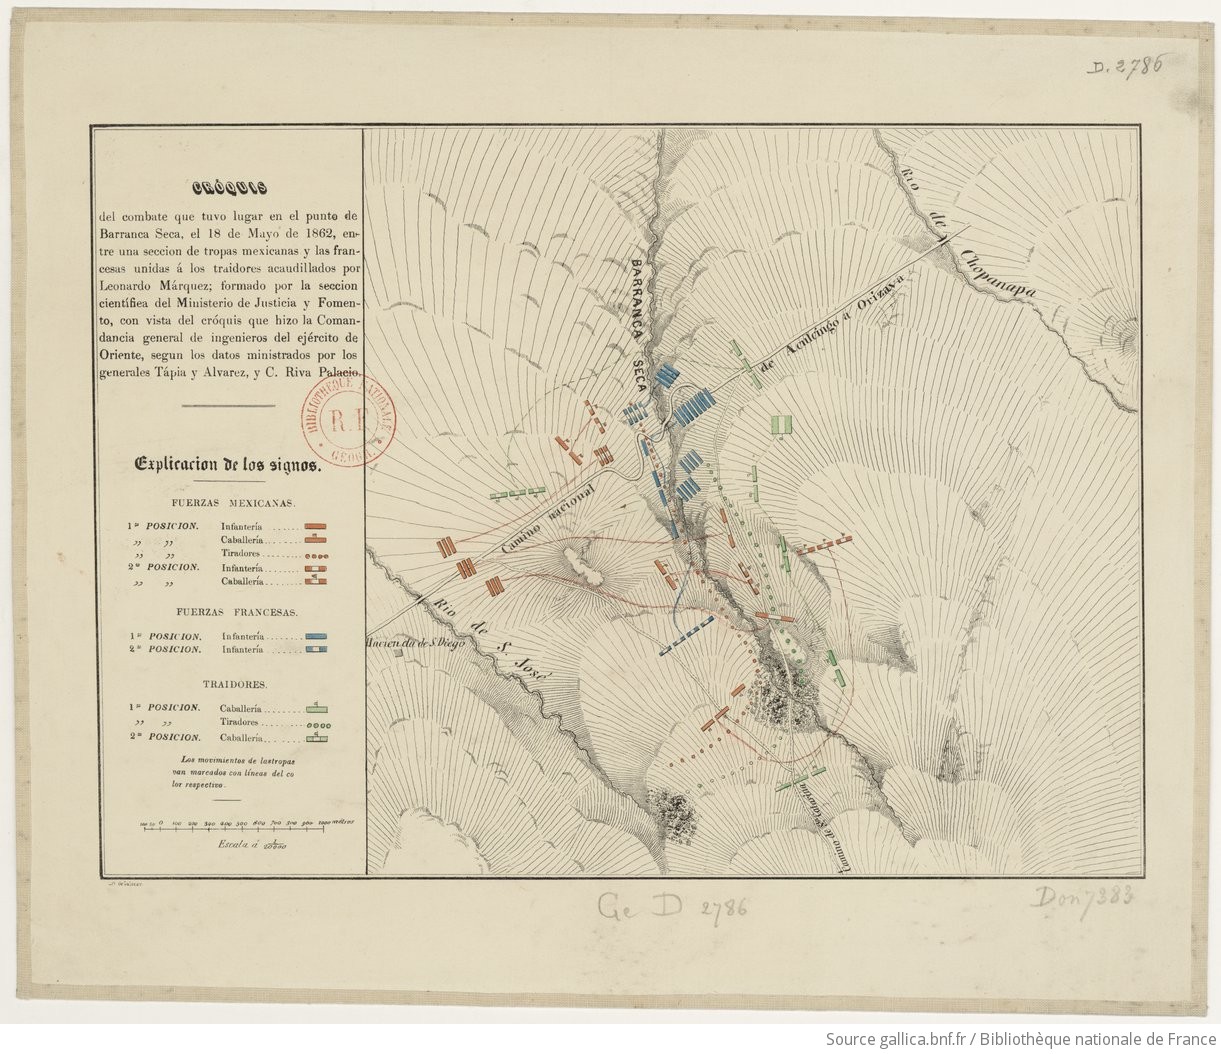 Croquis del combate que tuvo lugar en el punto de Barranca seca, el 18 de mayo de 1862, entre una seccion de tropas mejicanas y las Francesas...